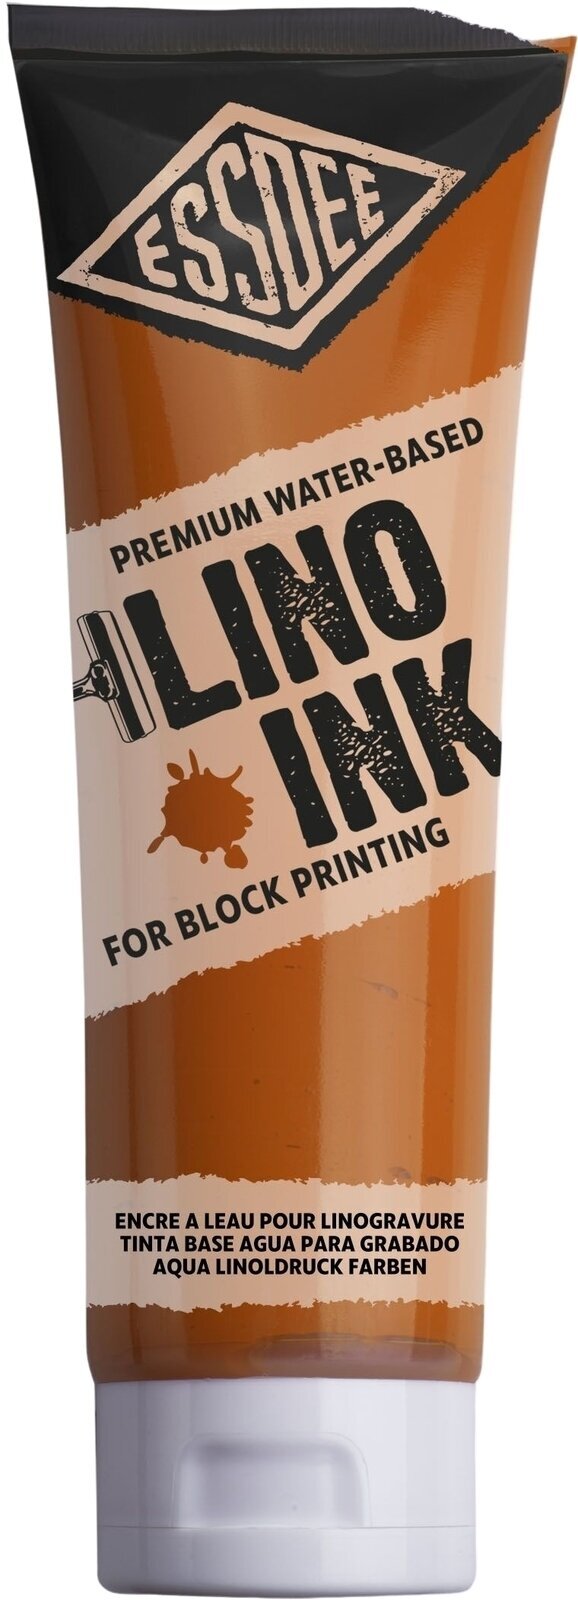 Боя за линогравюра Essdee Block Printing Ink Боя за линогравюра Orange 300 ml